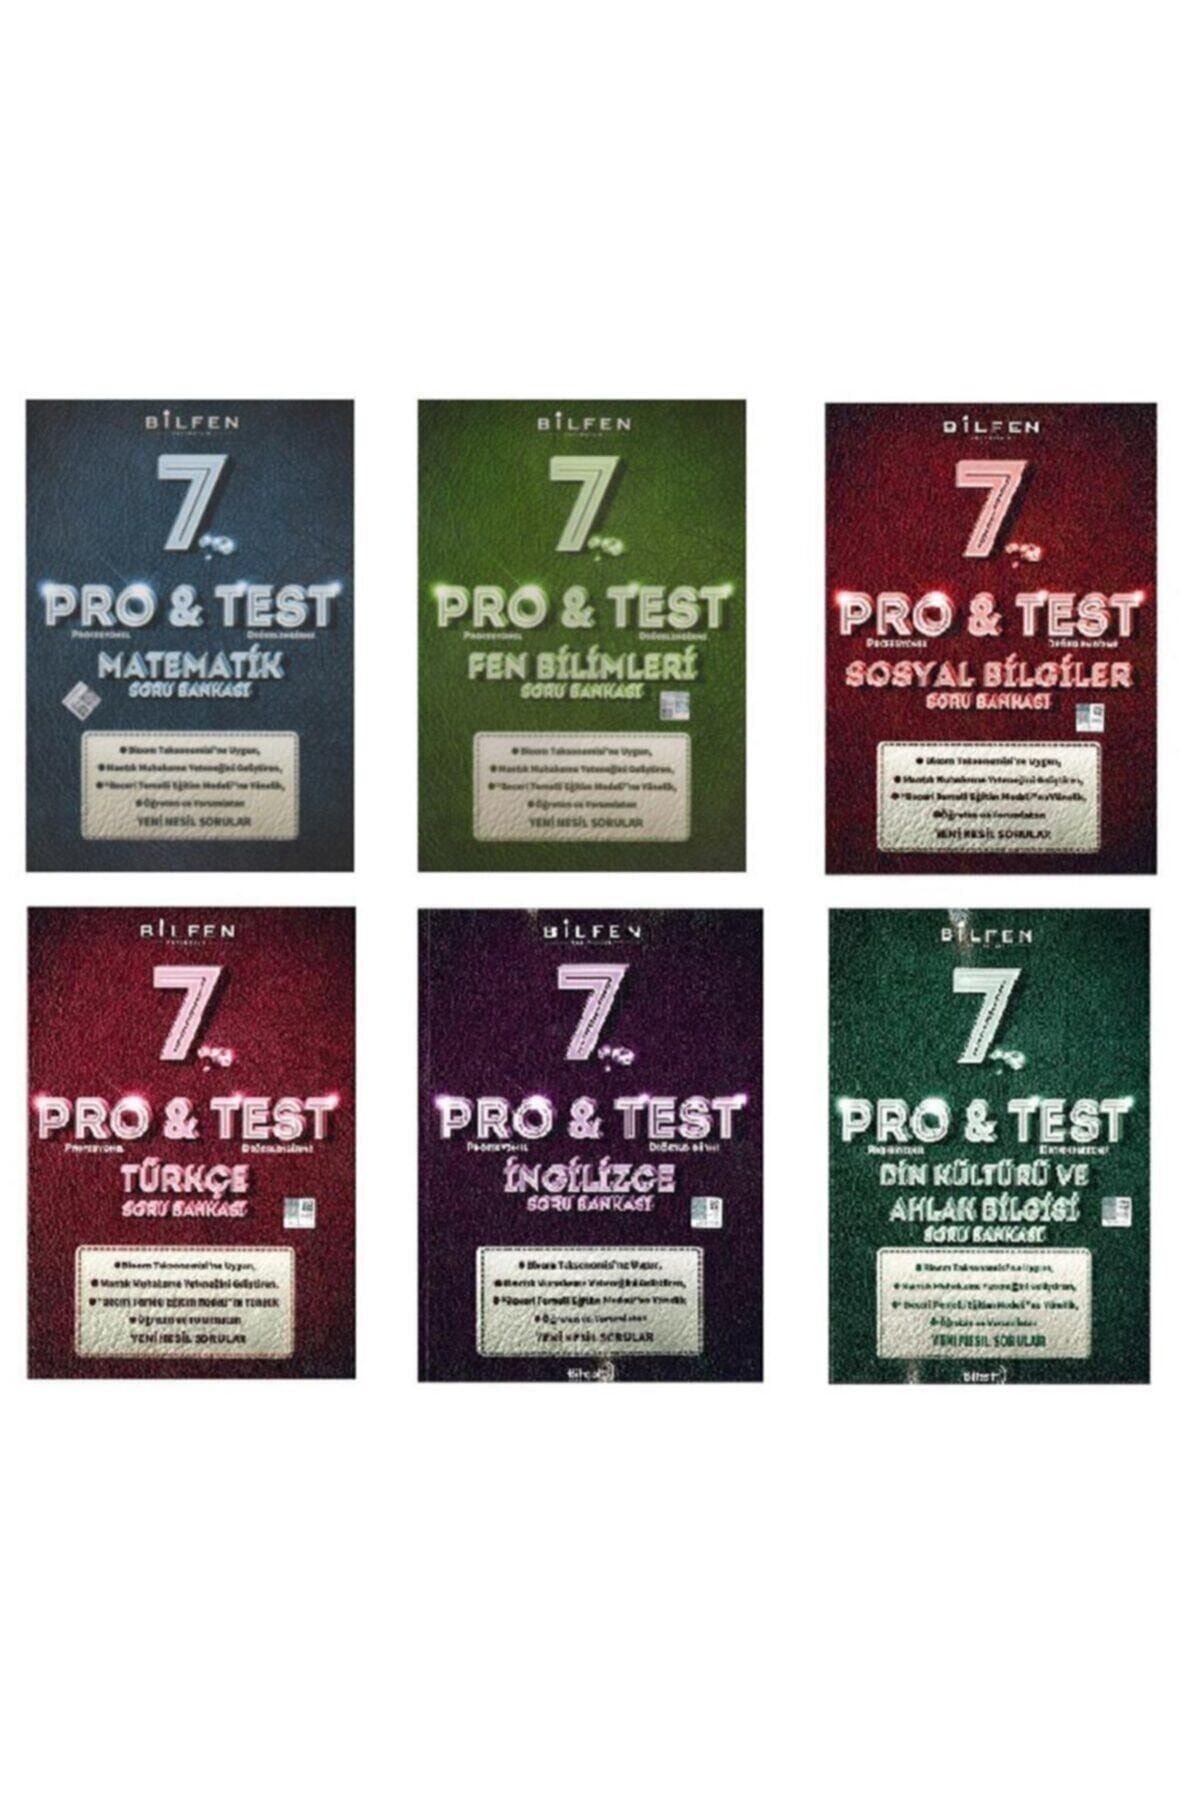 Bilfen Yayıncılık Bilfen 7.sınıf 6lı Pro&test Soru Bankası Seti